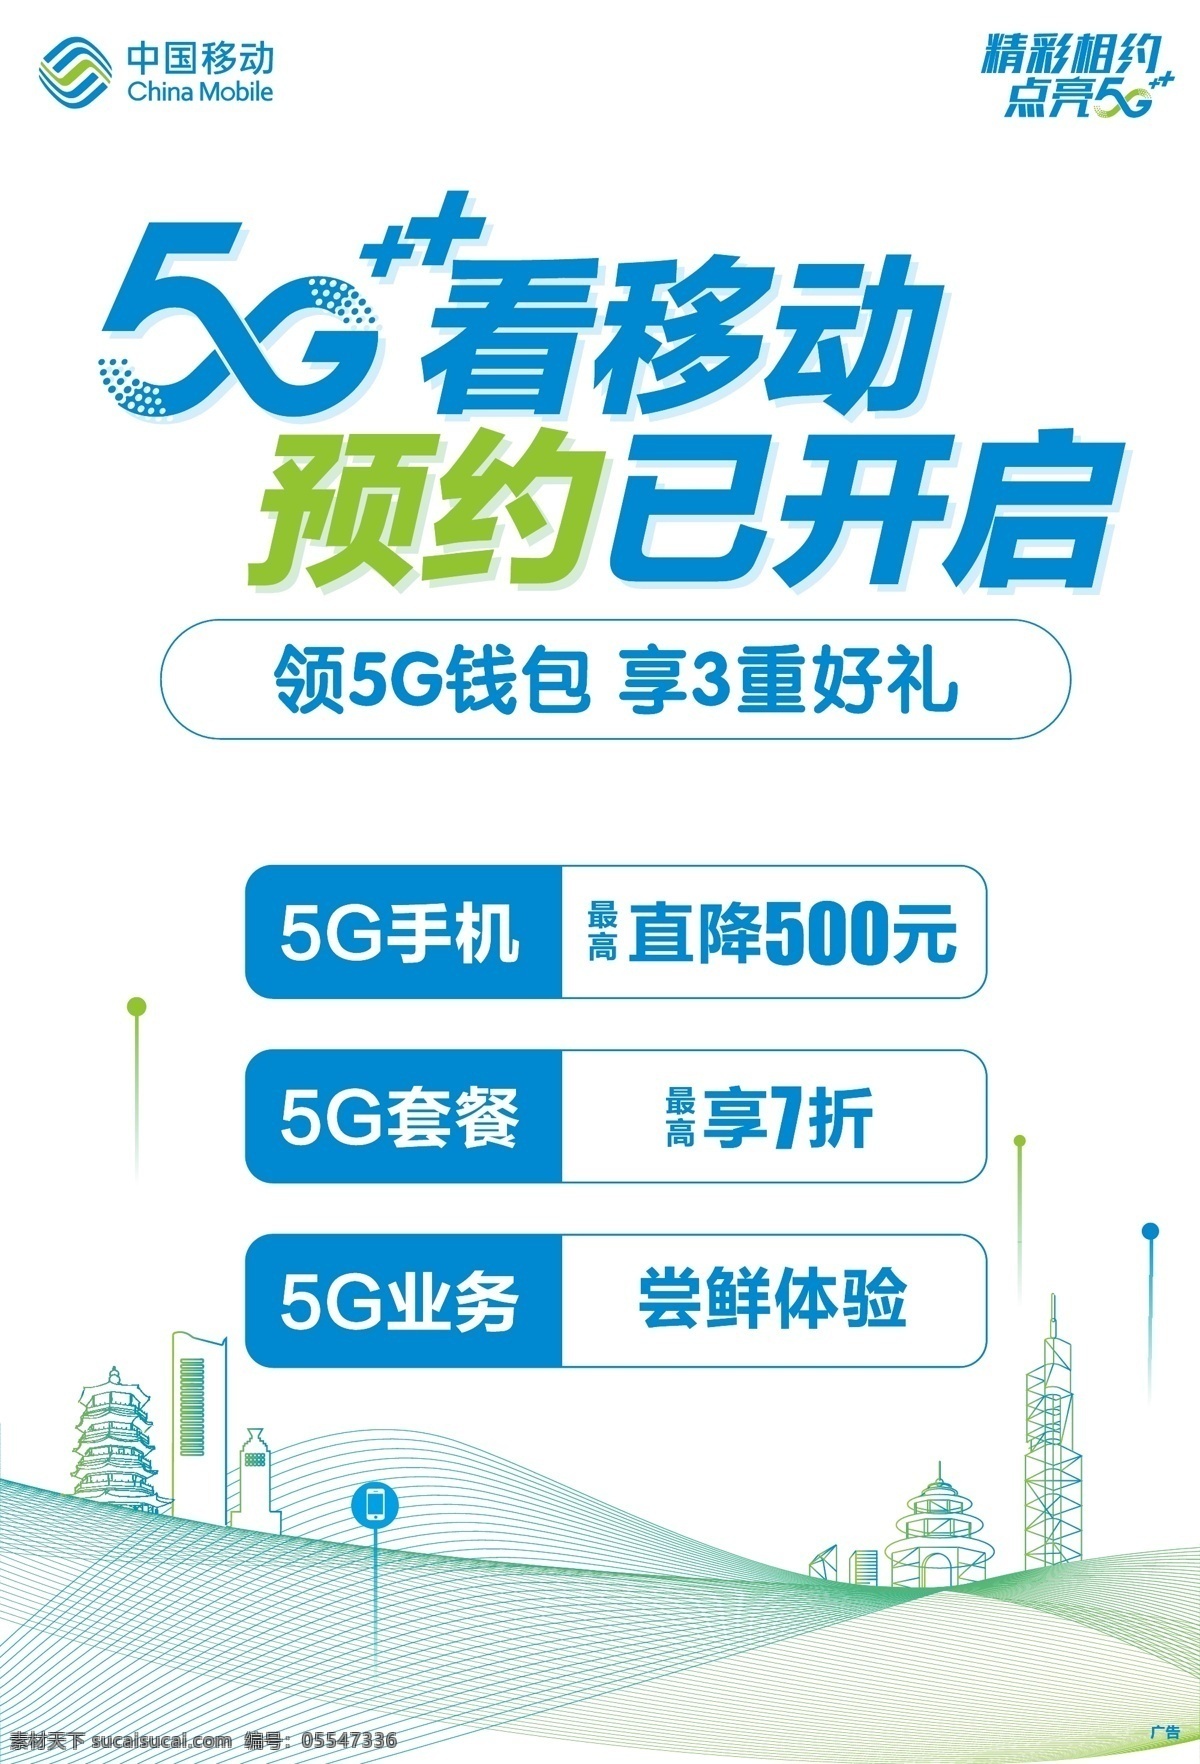 中国移动 5g 预约 海报 5g预约 移动5g